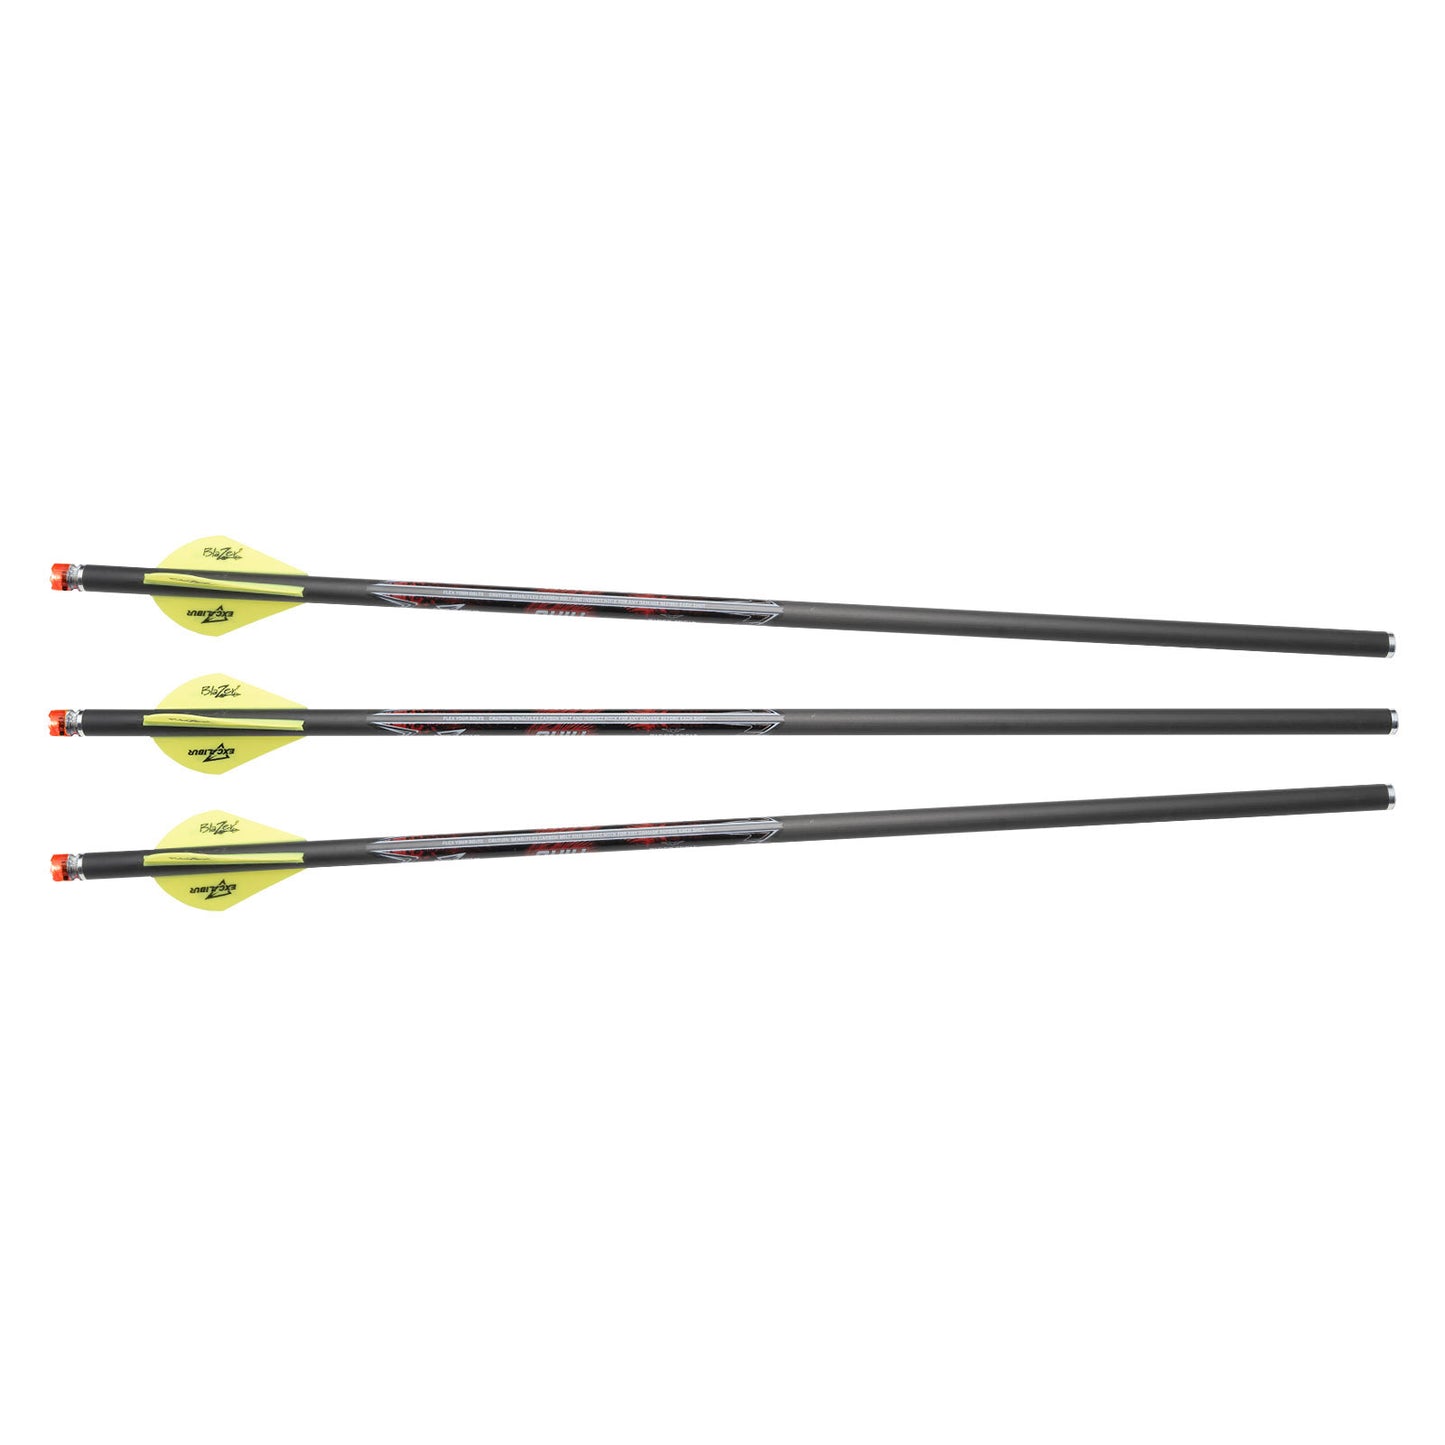 Excalibur Quill 16.5" Illuminated Carbon Arrows (3 PKG)